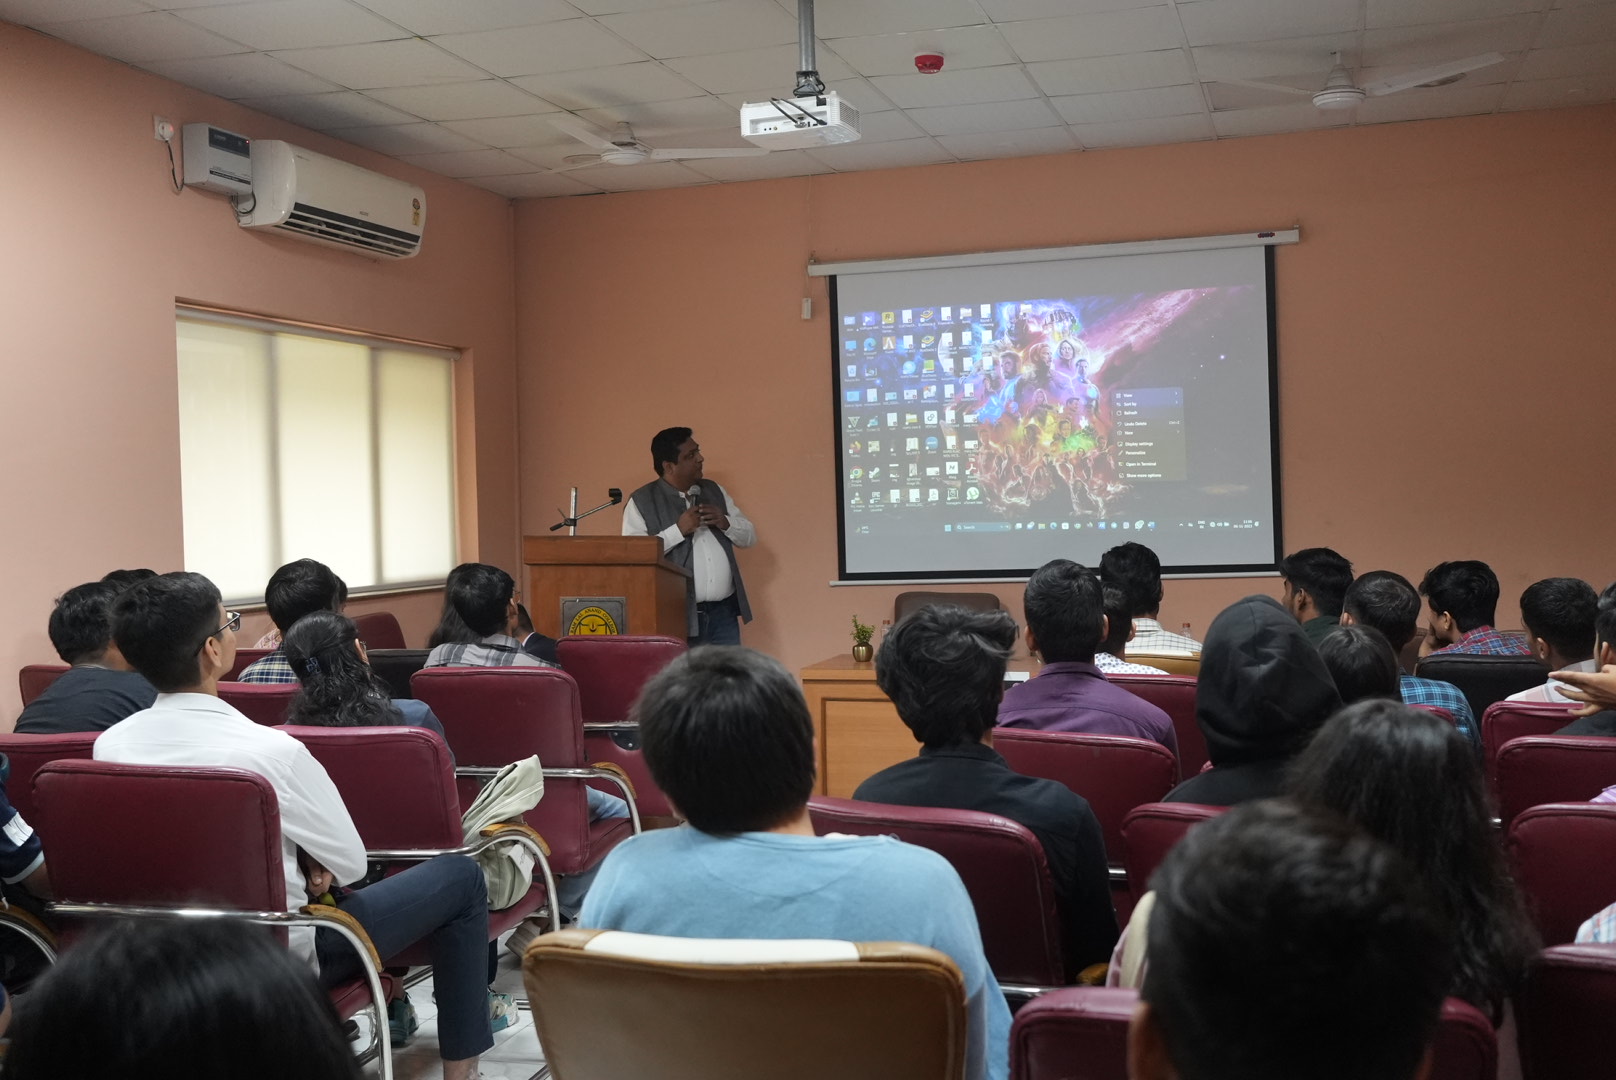 Tushar Kansal talk for Ram Lal Anand College, University of Delhi